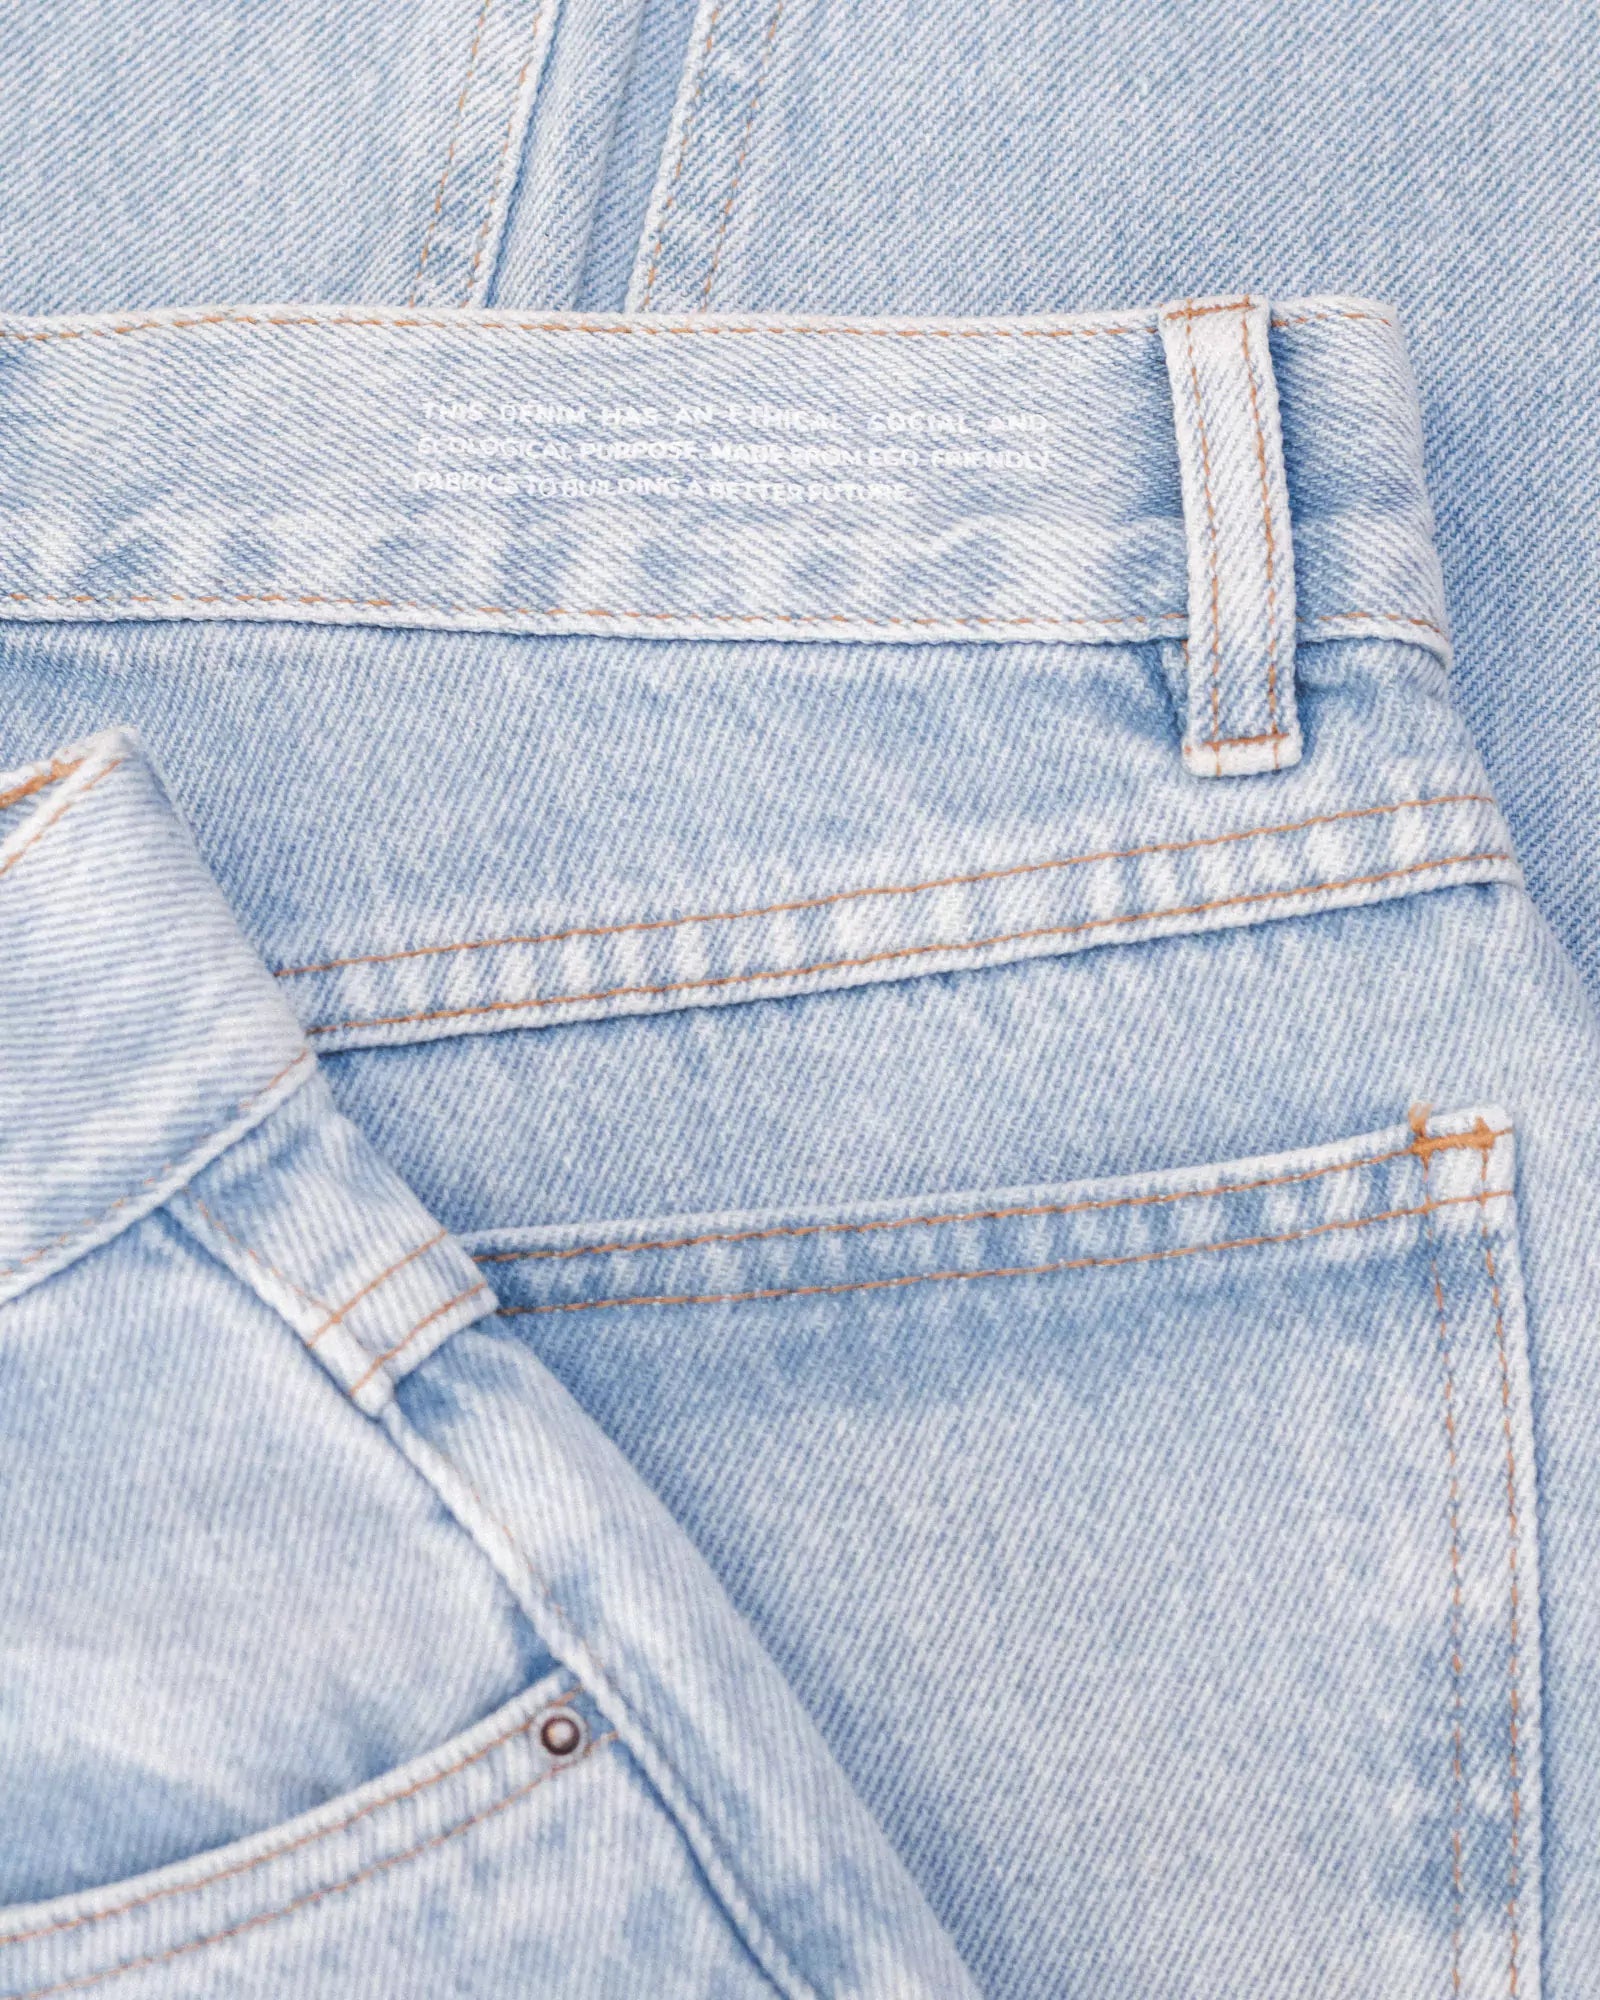 Calça Mom Jeans Azul Claro Eco Denim™. Compre online moda sustentável e atemporal na Minimadeia. Roupas femininas estilosas, básicas e sustentáveis. Foto produto destaque